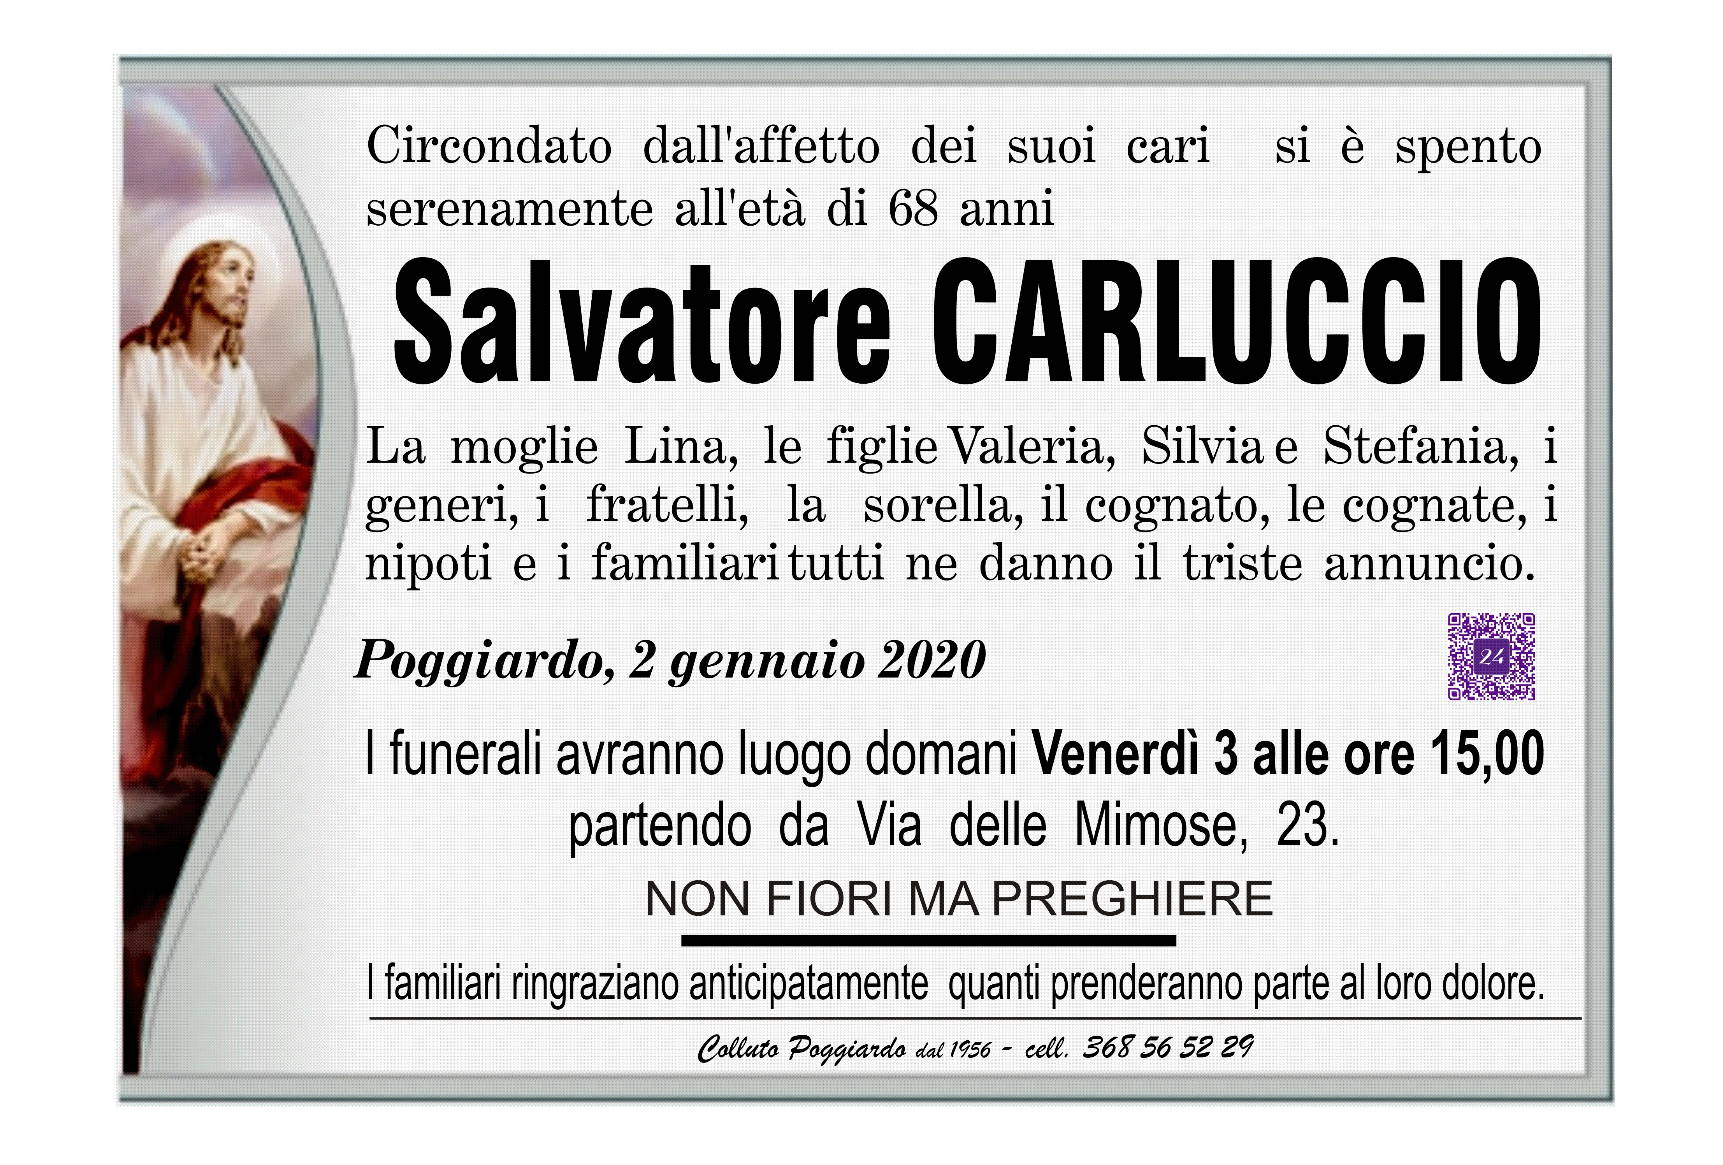 Salvatore Carluccio